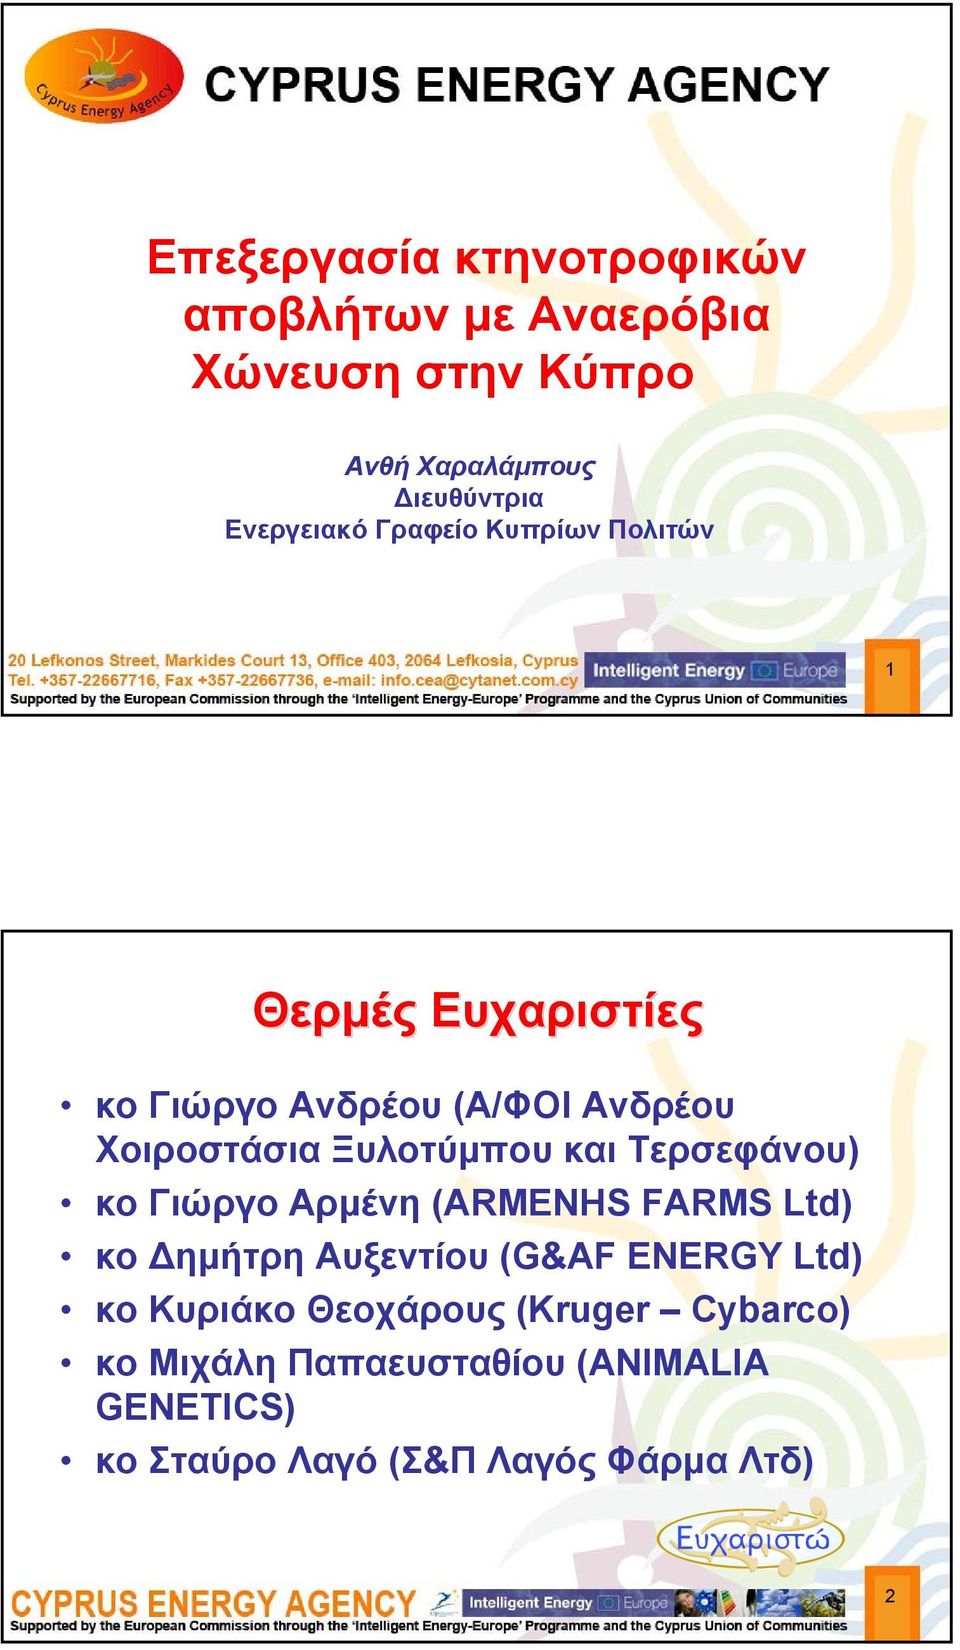 Ξυλοτύμπου και Τερσεφάνου) κο Γιώργο Αρμένη (ARMENHS FARMS Ltd) κο Δημήτρη Αυξεντίου (G&AF ENERGY Ltd)